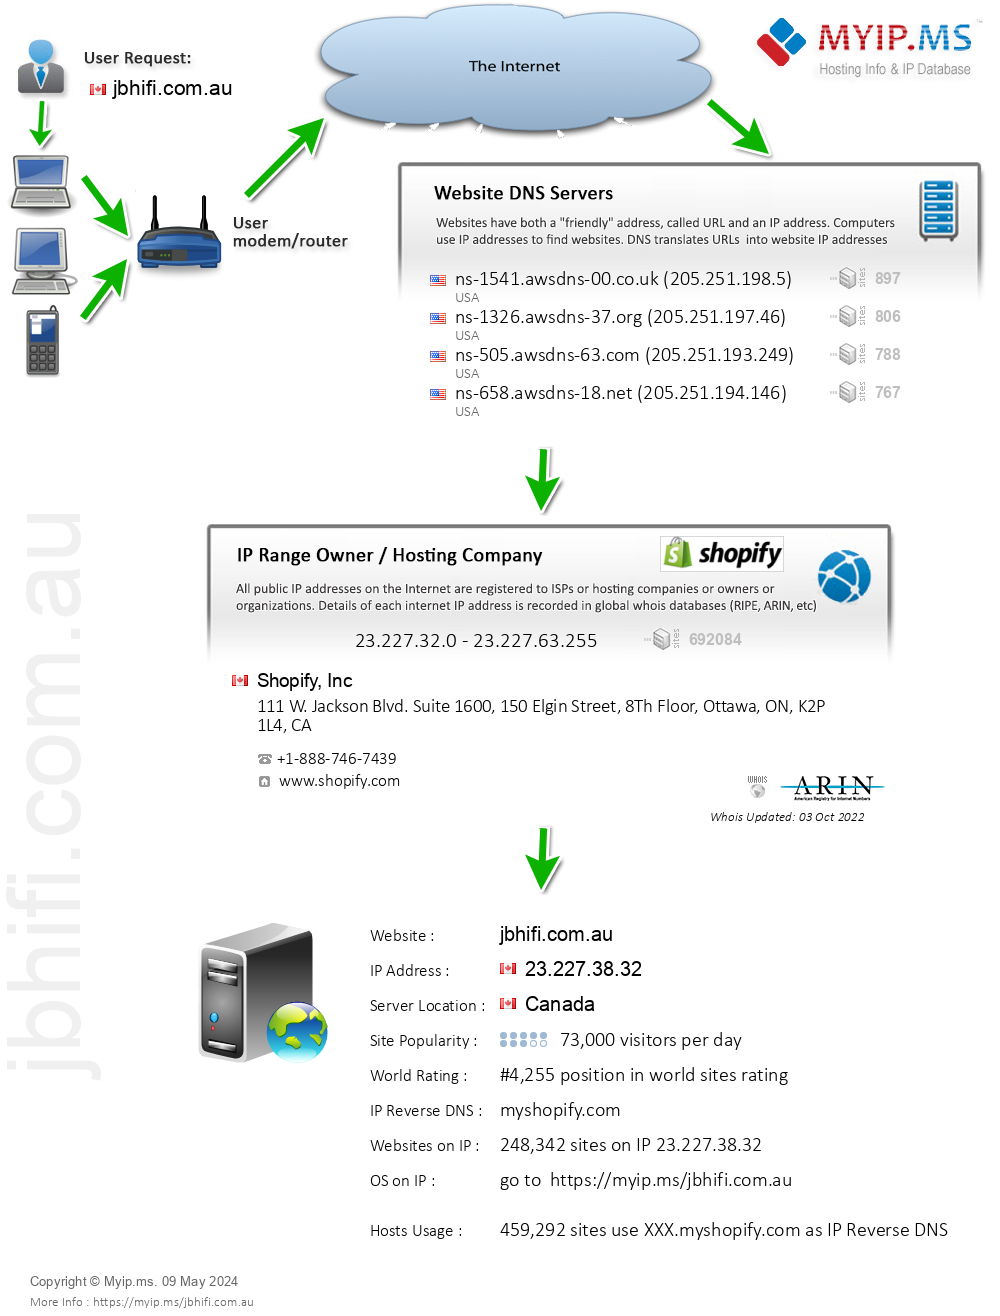 Jbhifi.com.au - Website Hosting Visual IP Diagram